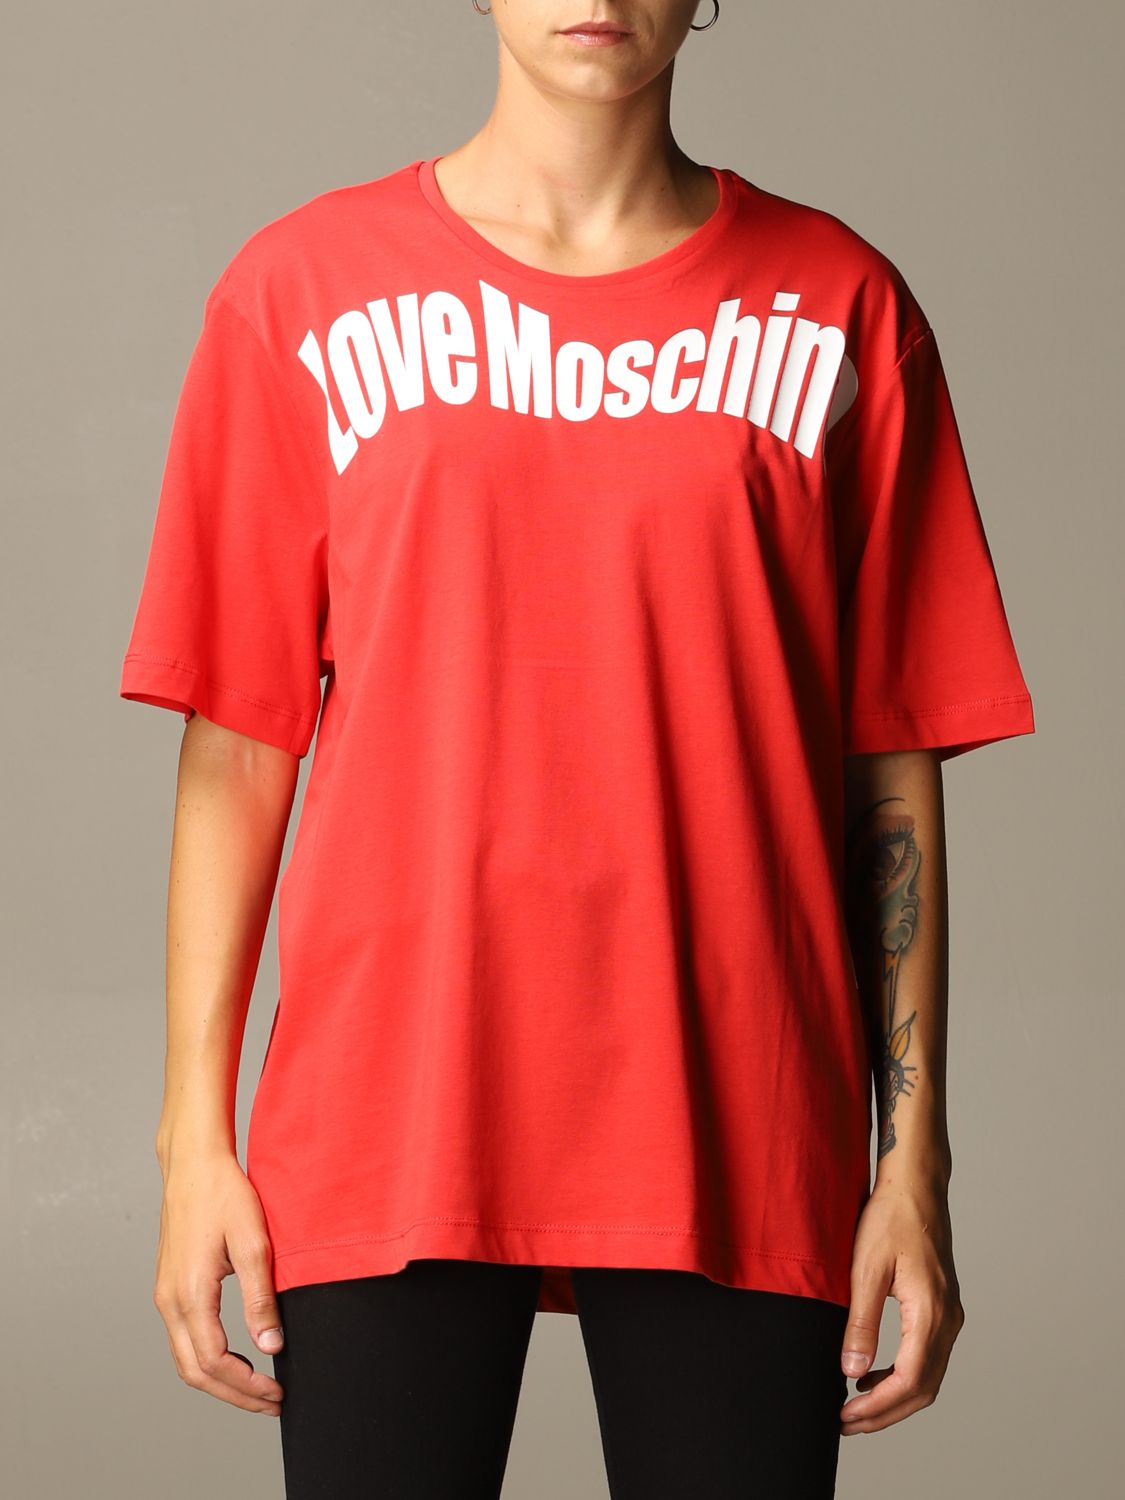 moschino shirt red